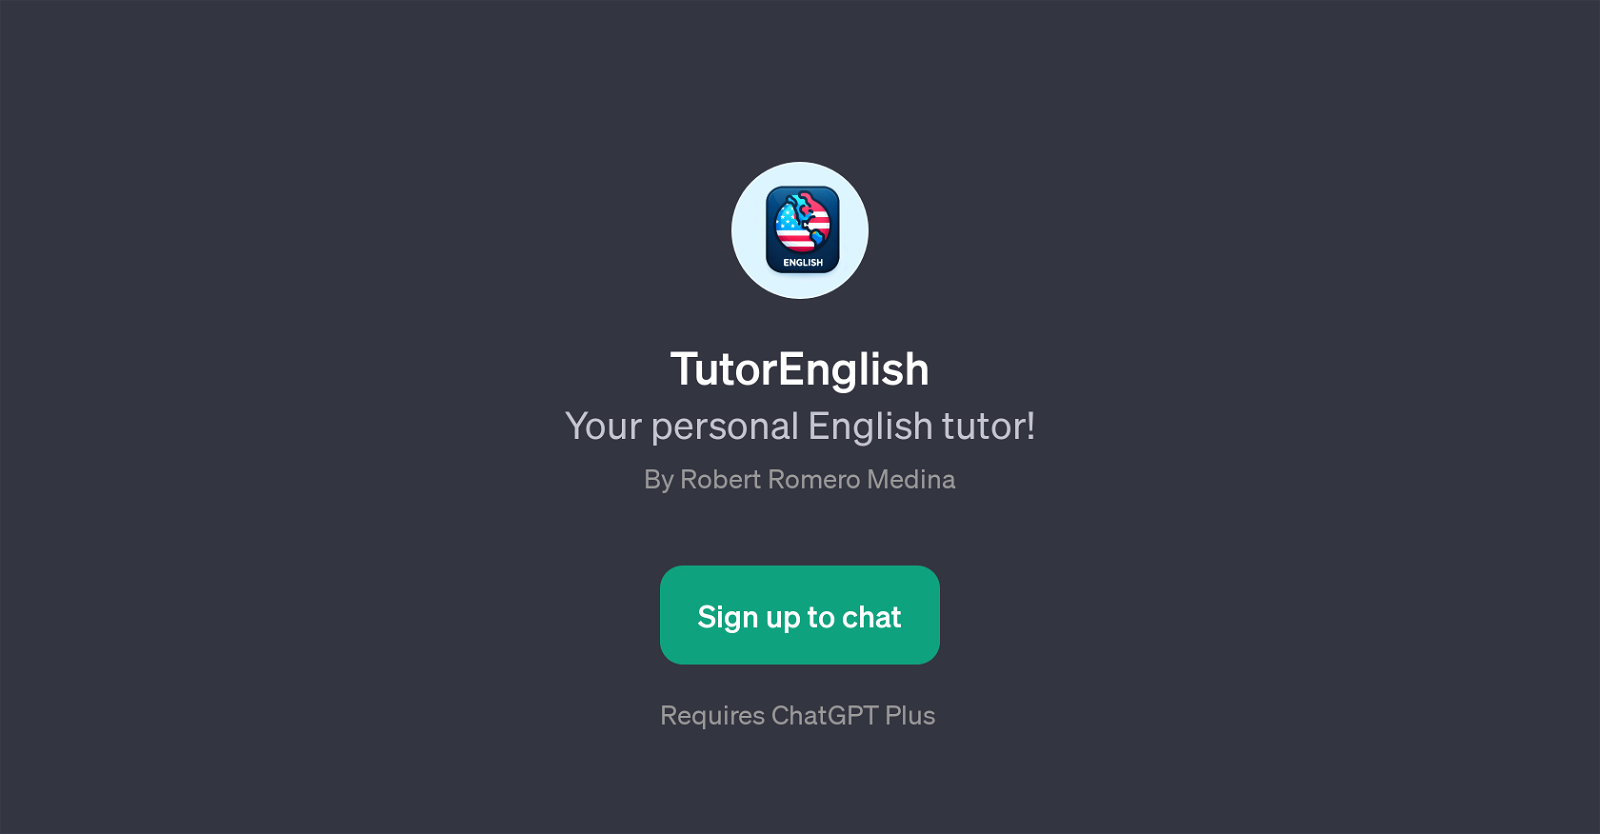 TutorEnglish website